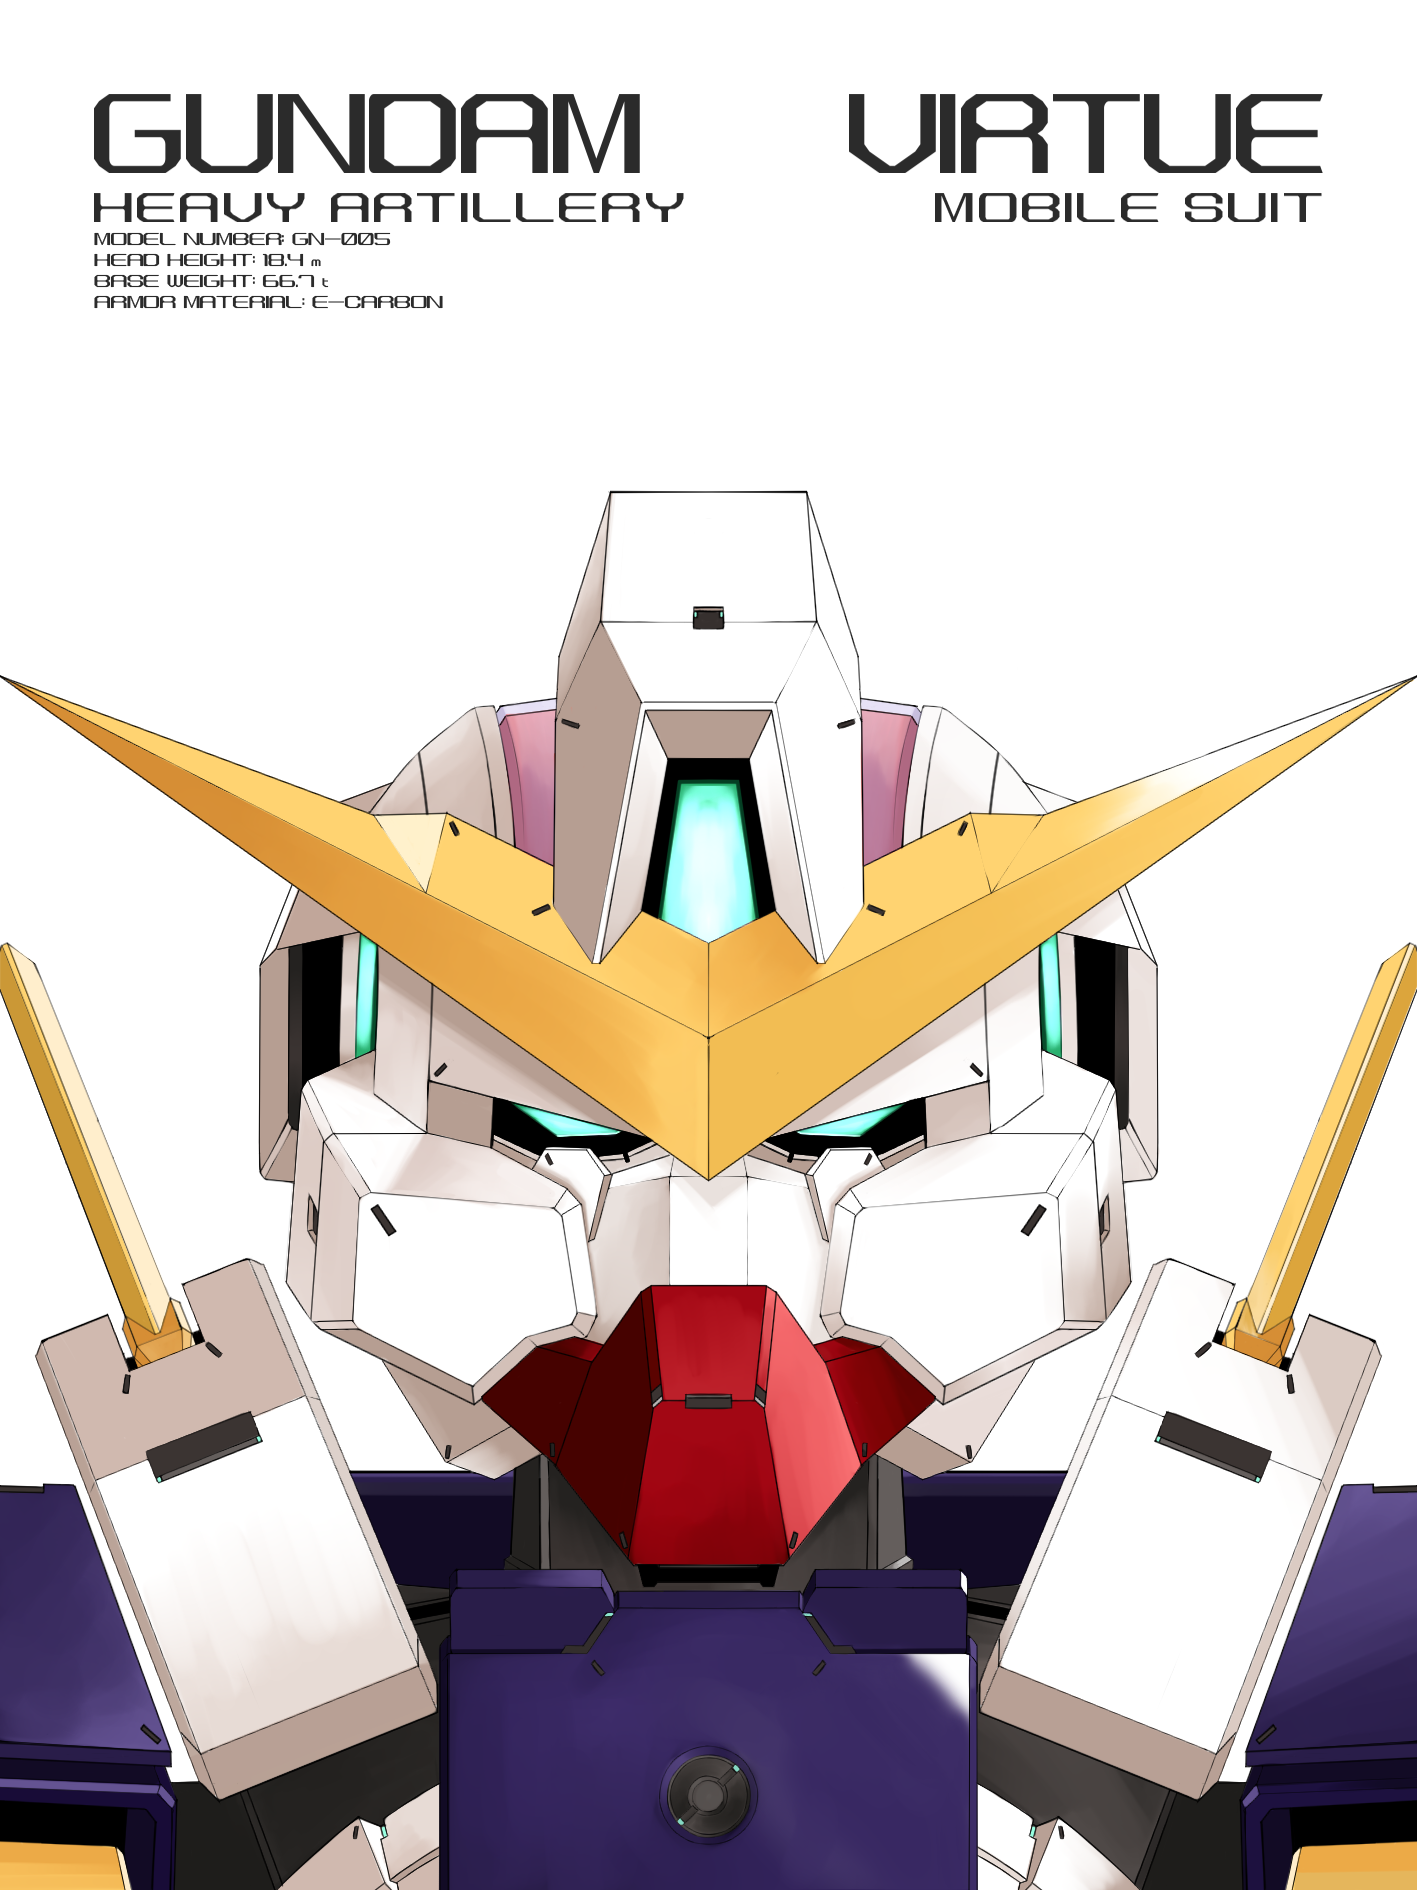 Gundam Virtue Anime Mechs Super Robot Taisen Gundam Mobile Suit Gundam 00 Artwork Digital Art Fan Ar 1417x1890